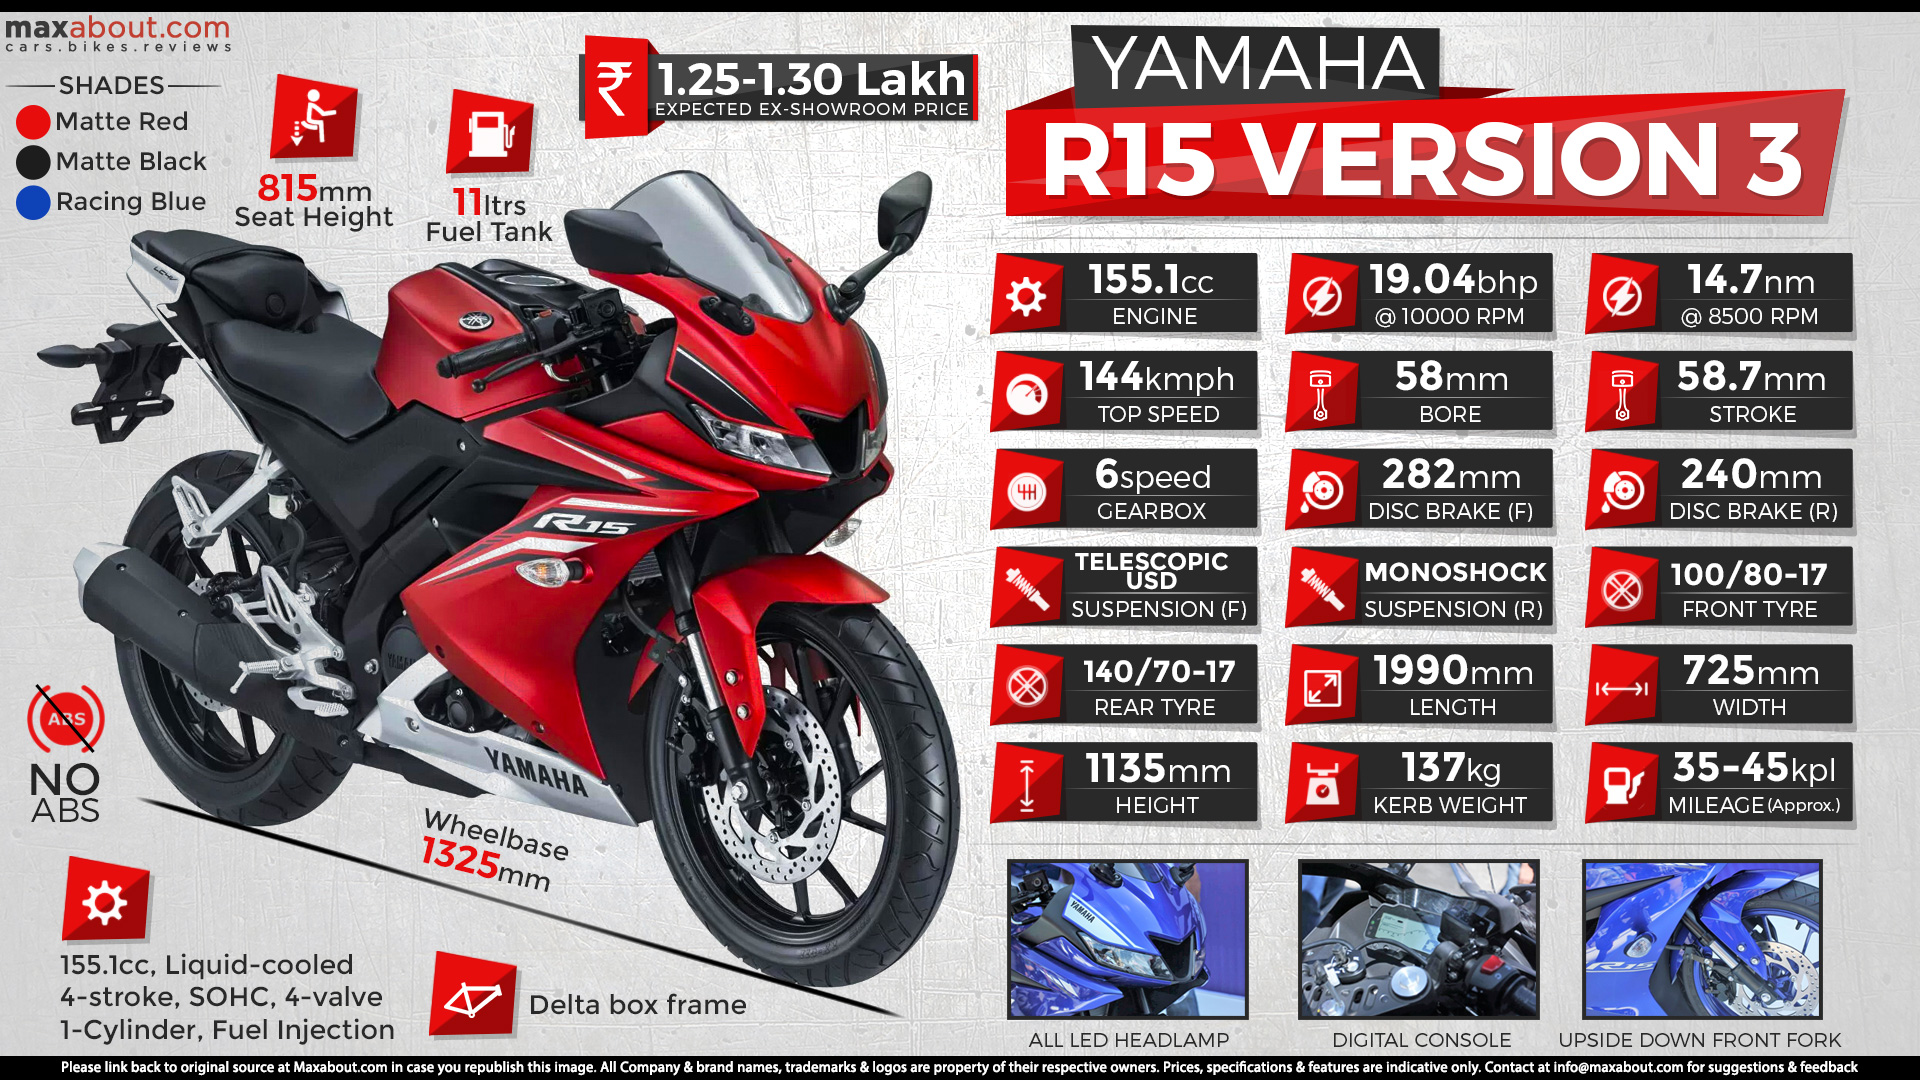 Used 2020 model Yamaha YZF R15 V3 BS6 for sale in Kolkata ID 269943   Bikes4Sale